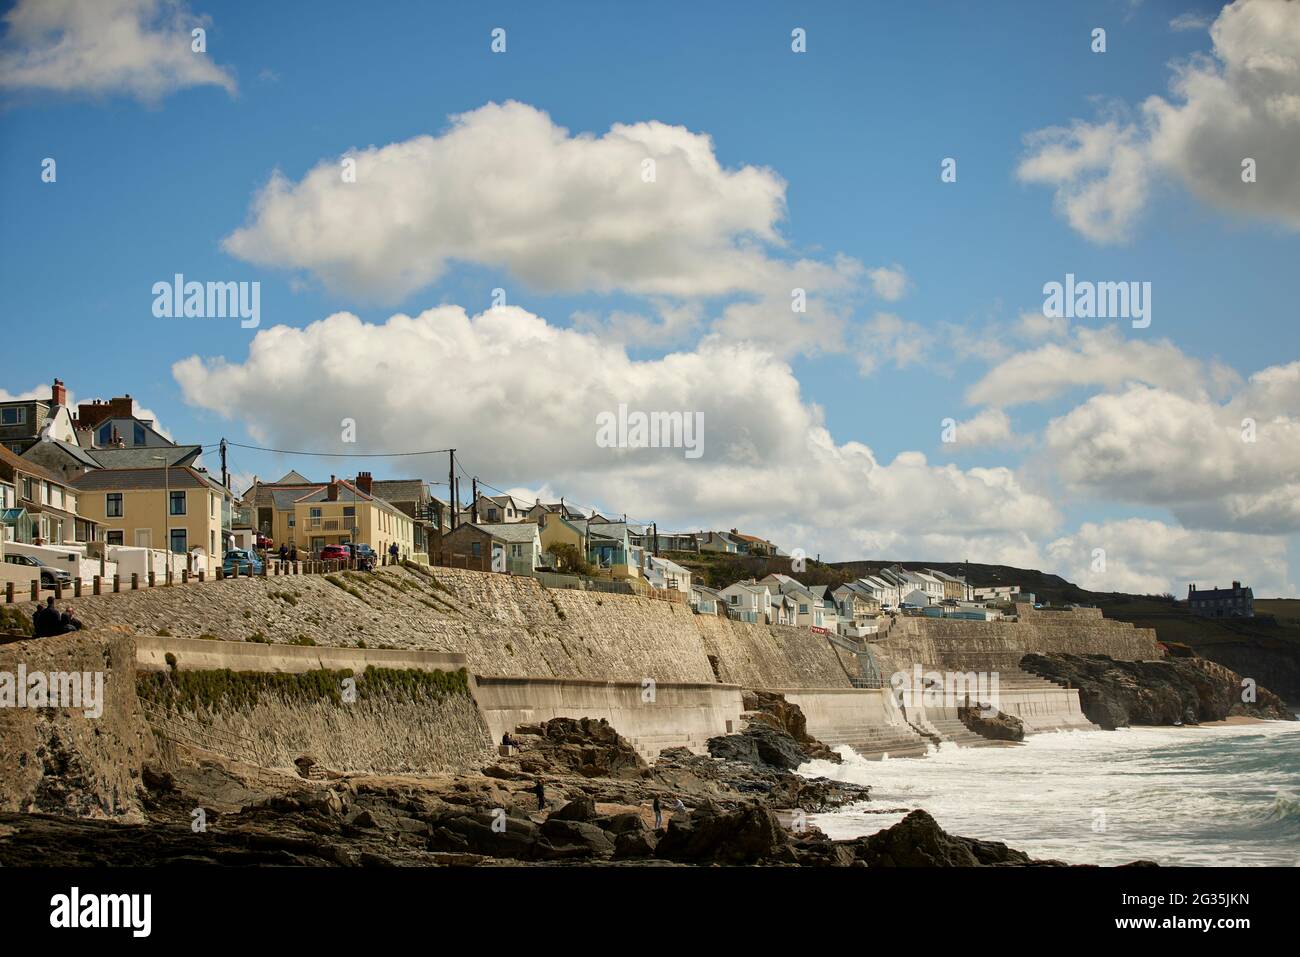 Cornish Touristenziel Porthleven, Cornwall, England, abgebildet Wohnbestand entlang der Küste Cliff Road und der See-Verteidigungsmauer Stockfoto